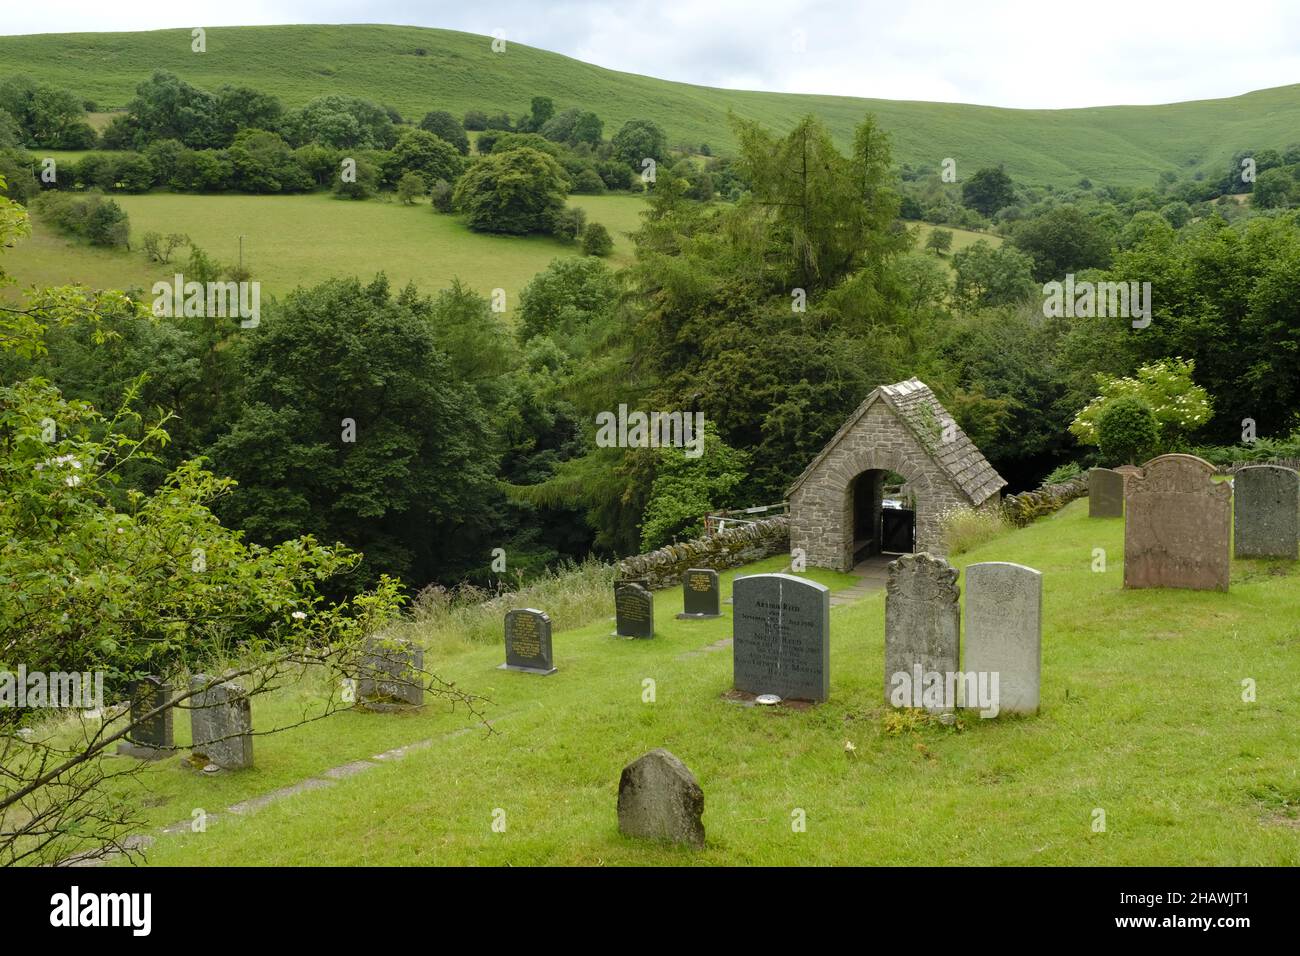 Cimetière de l'église Saint-Issui et porte couverte dans un paysage vallonné, Partrishow, Powys, pays de Galles, Royaume-Uni Banque D'Images